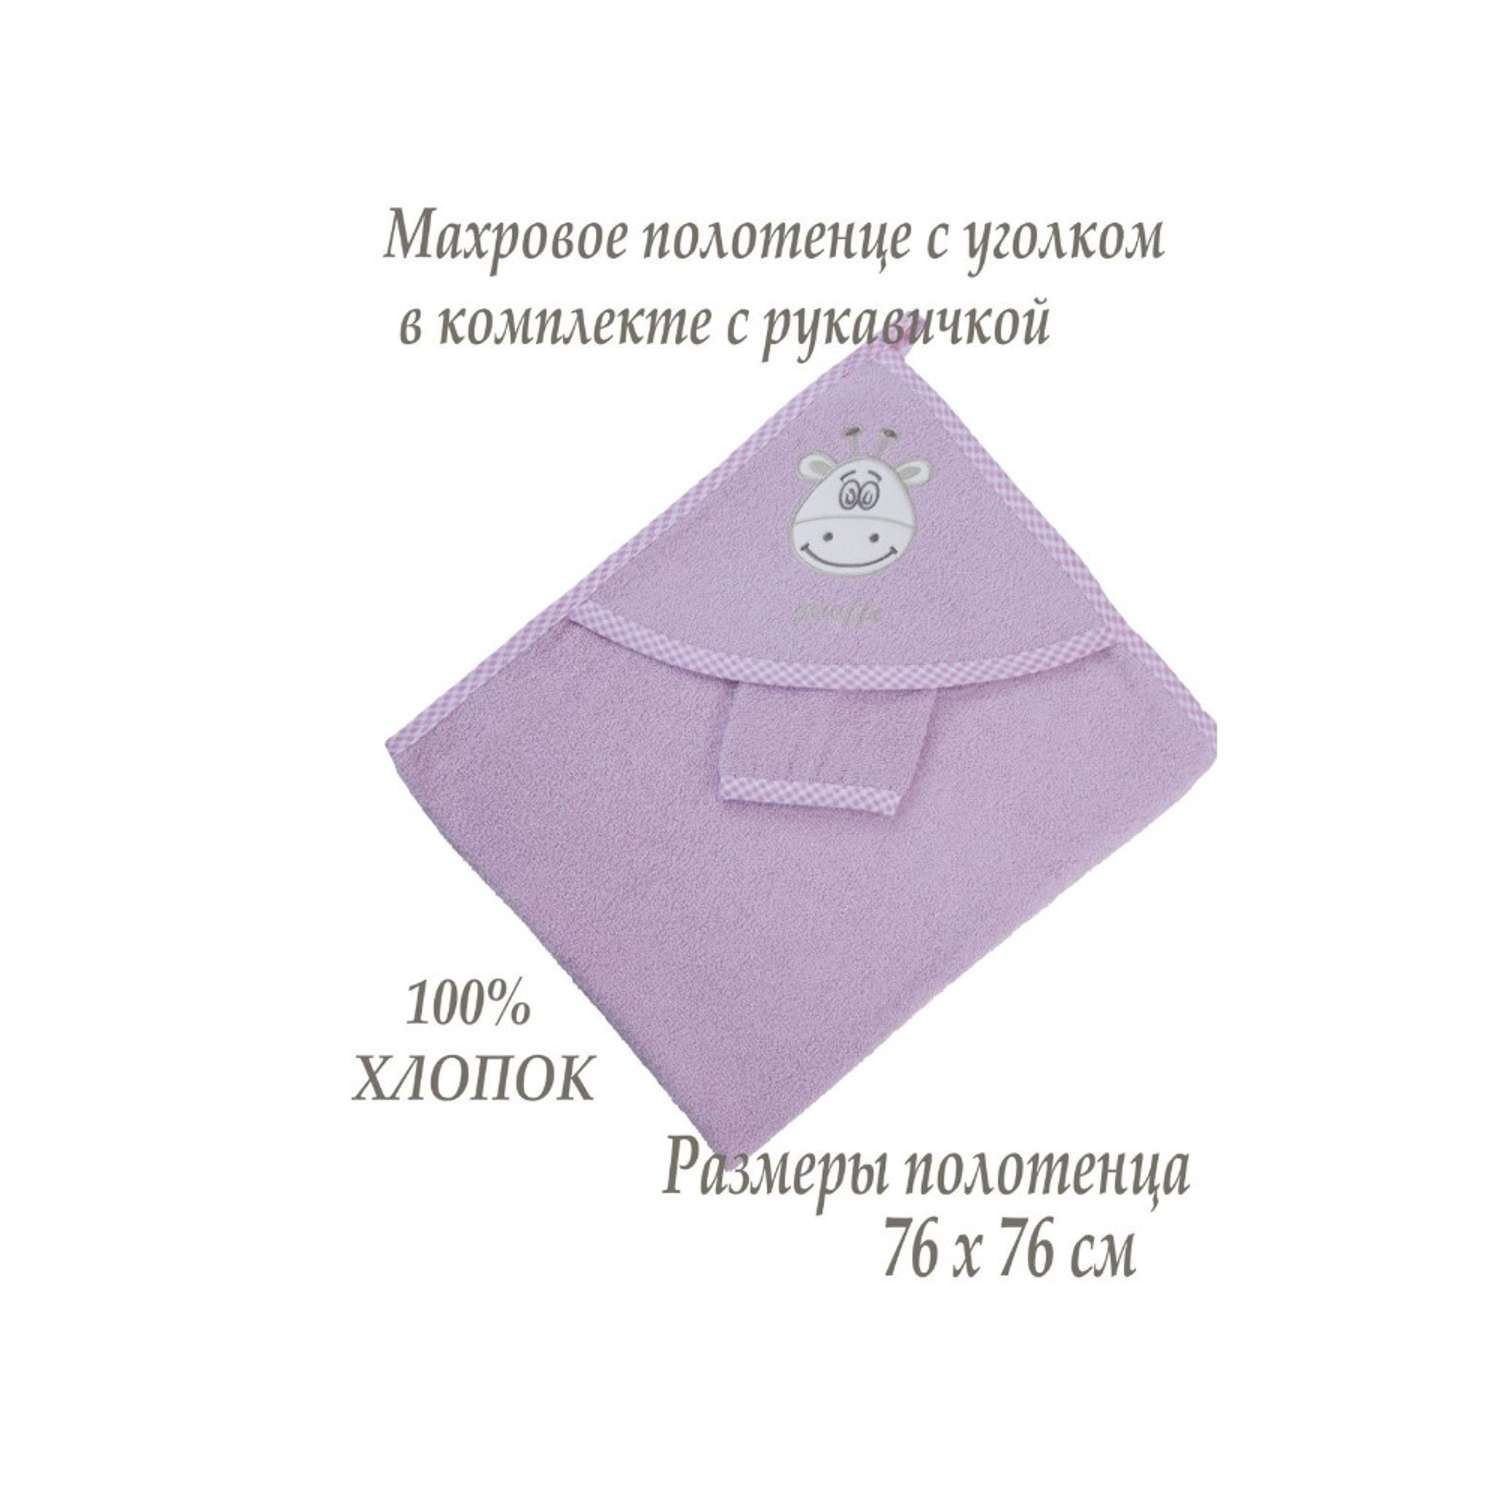 Набор для купания малыша M-BABY махровое полотенце с уголком и рукавичка 100% хлопок розовый - фото 2